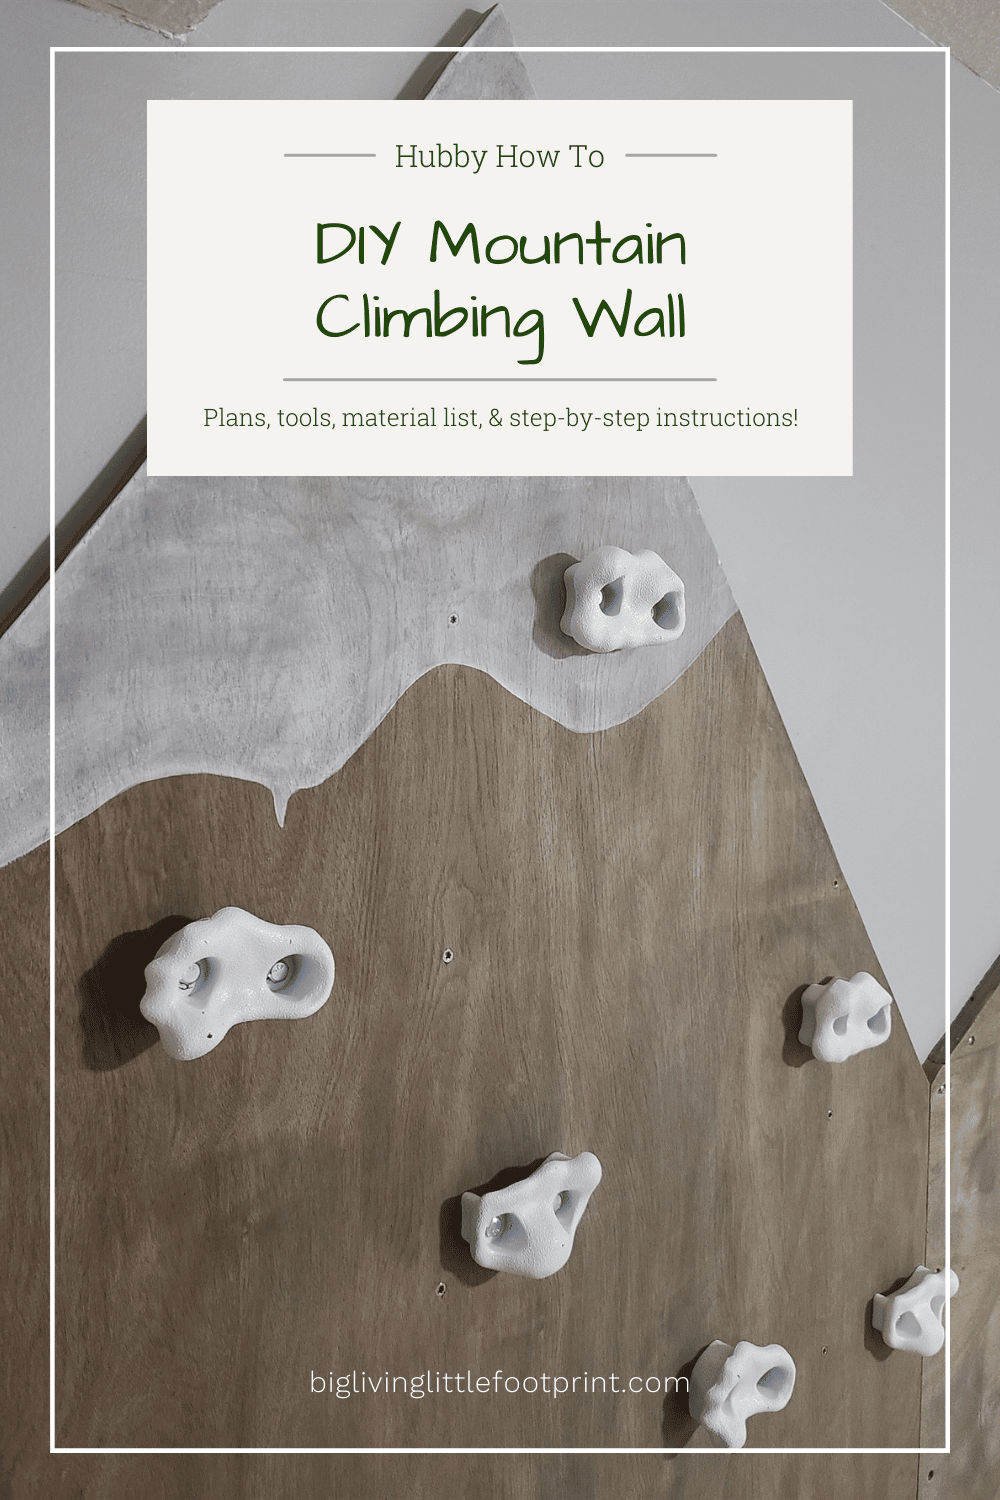 Hubby How To – DIY Mountain Climbing Wall